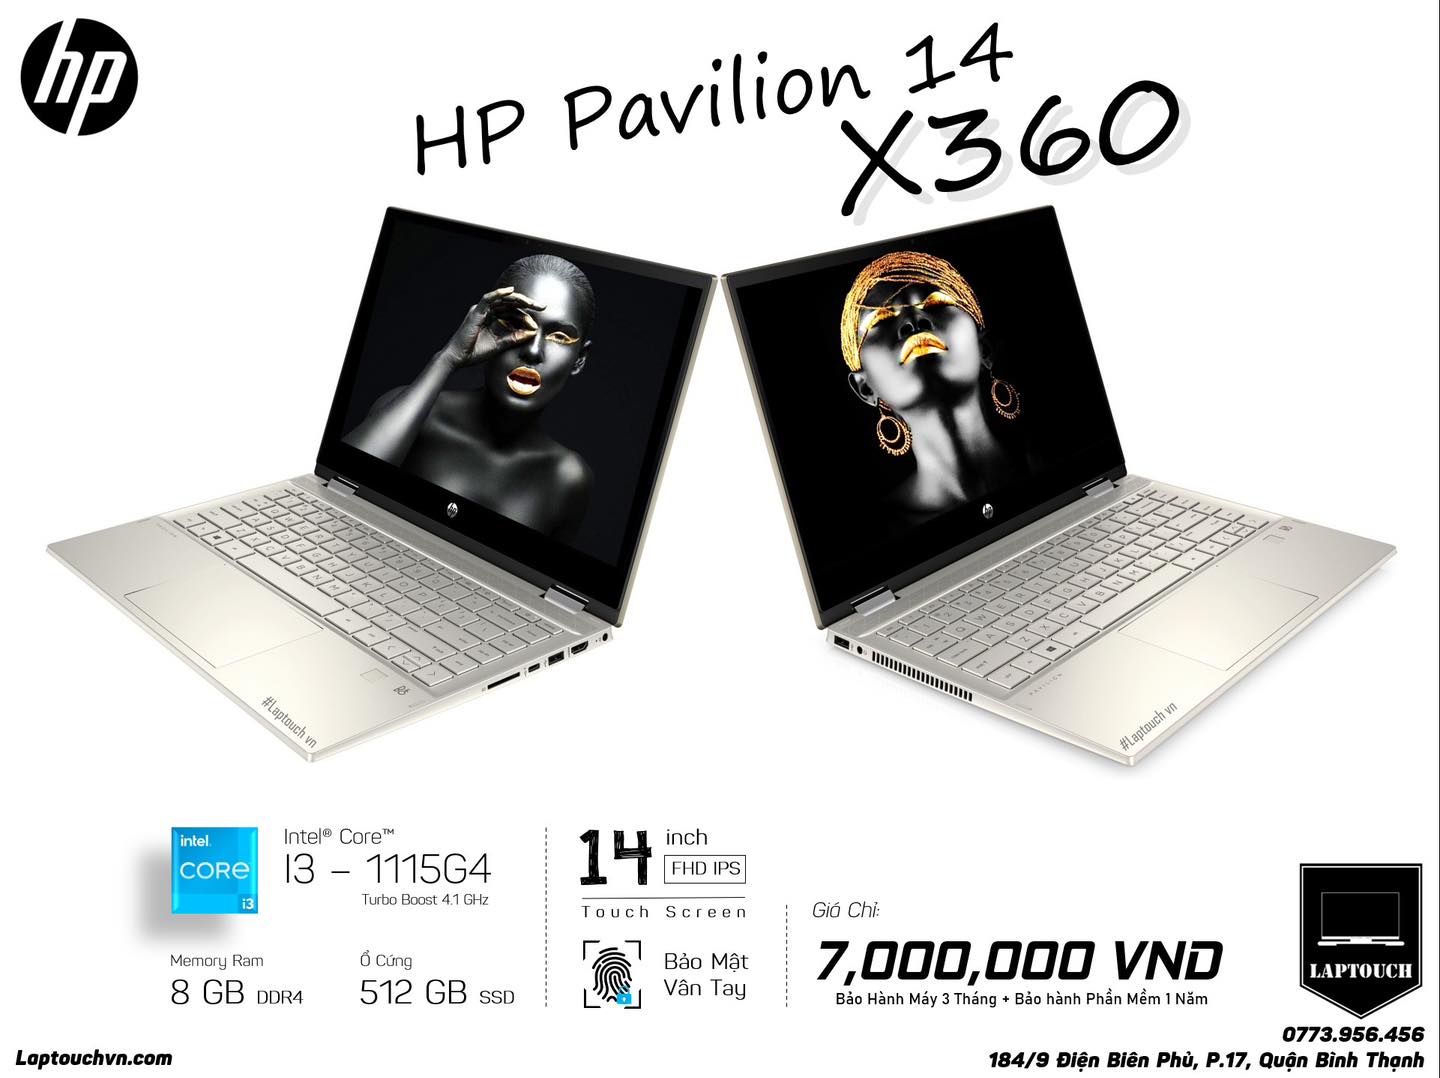 HP Pavilion 14 X360 [ Like New ]